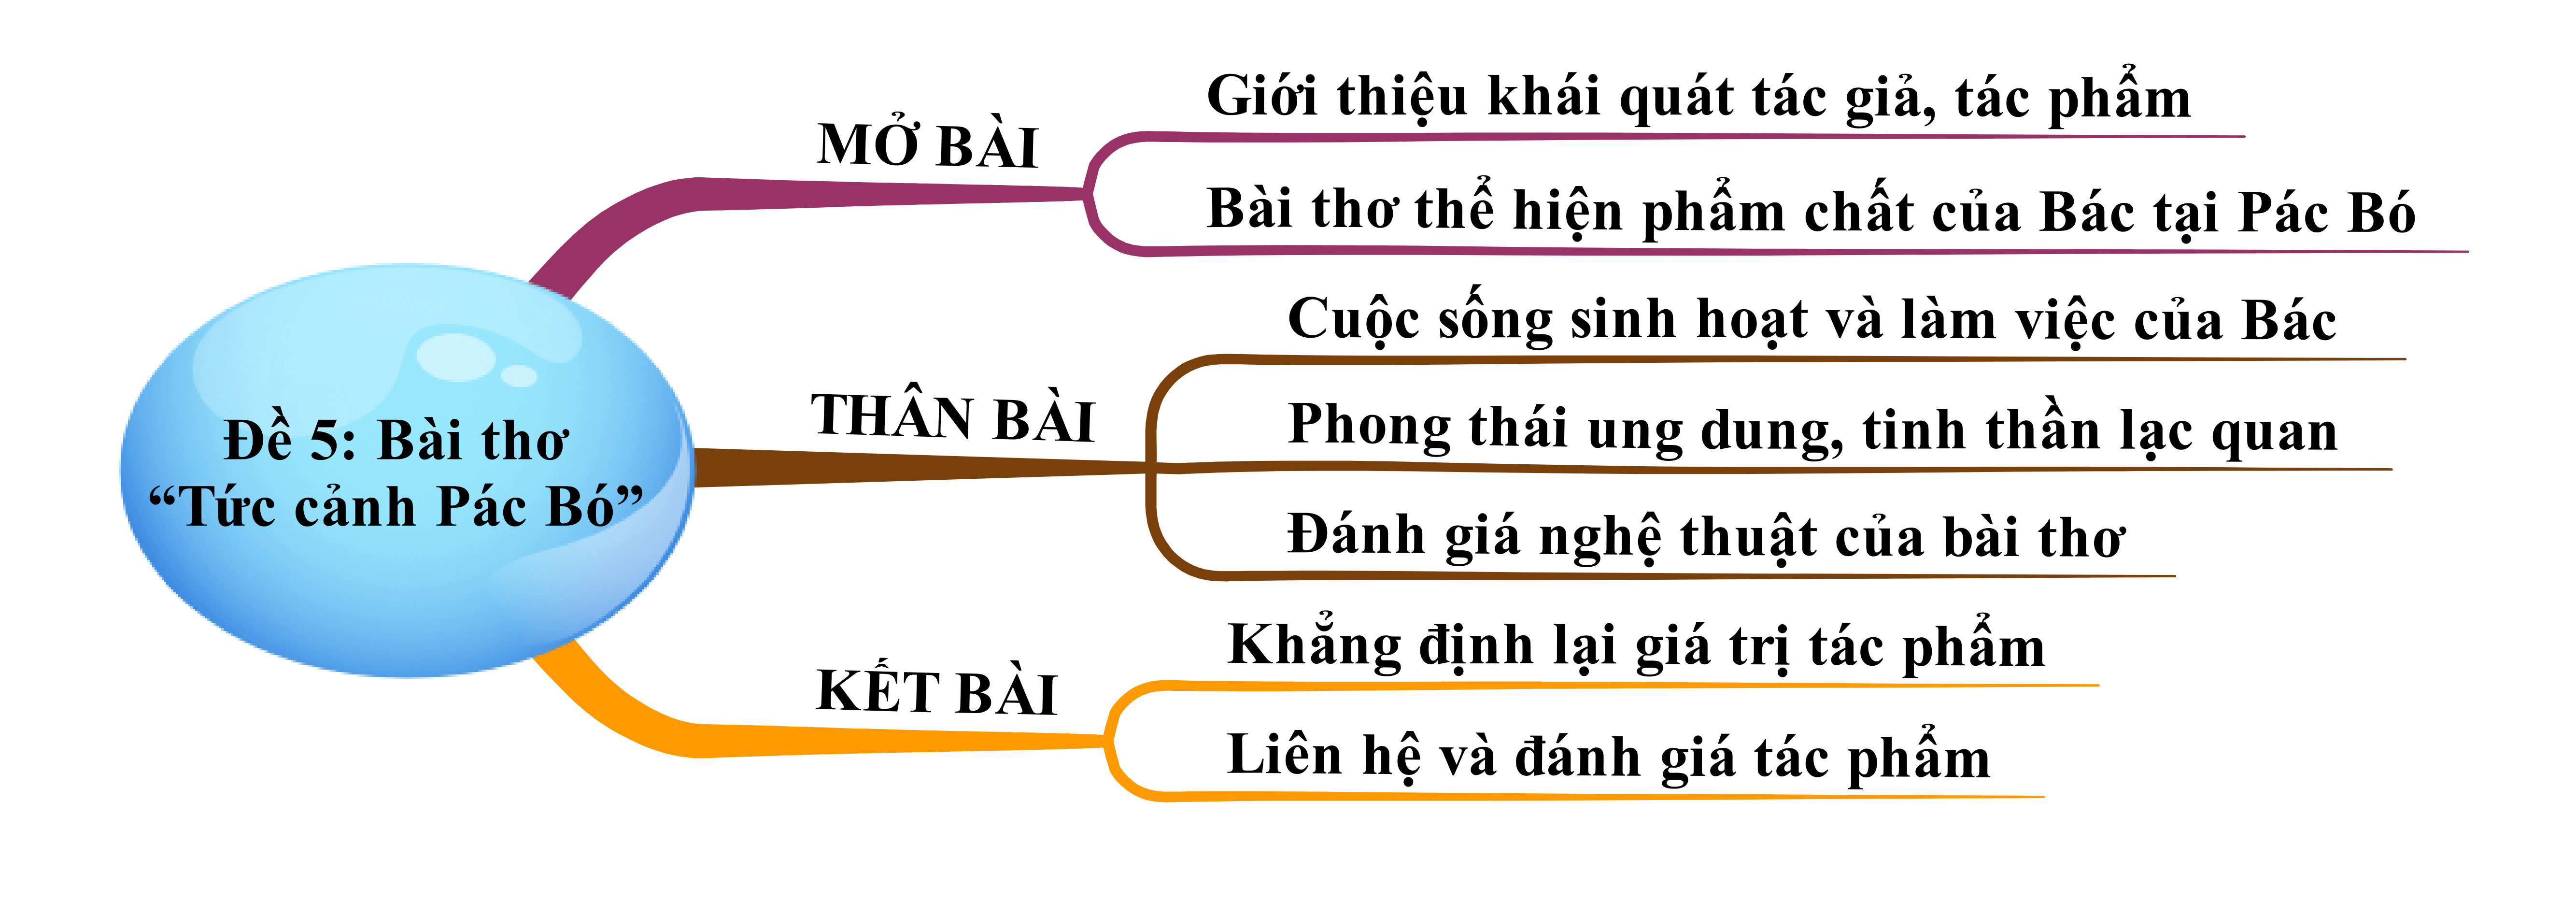 Bài thơ Tức cảnh Pác Bó của Hồ Chí Minh